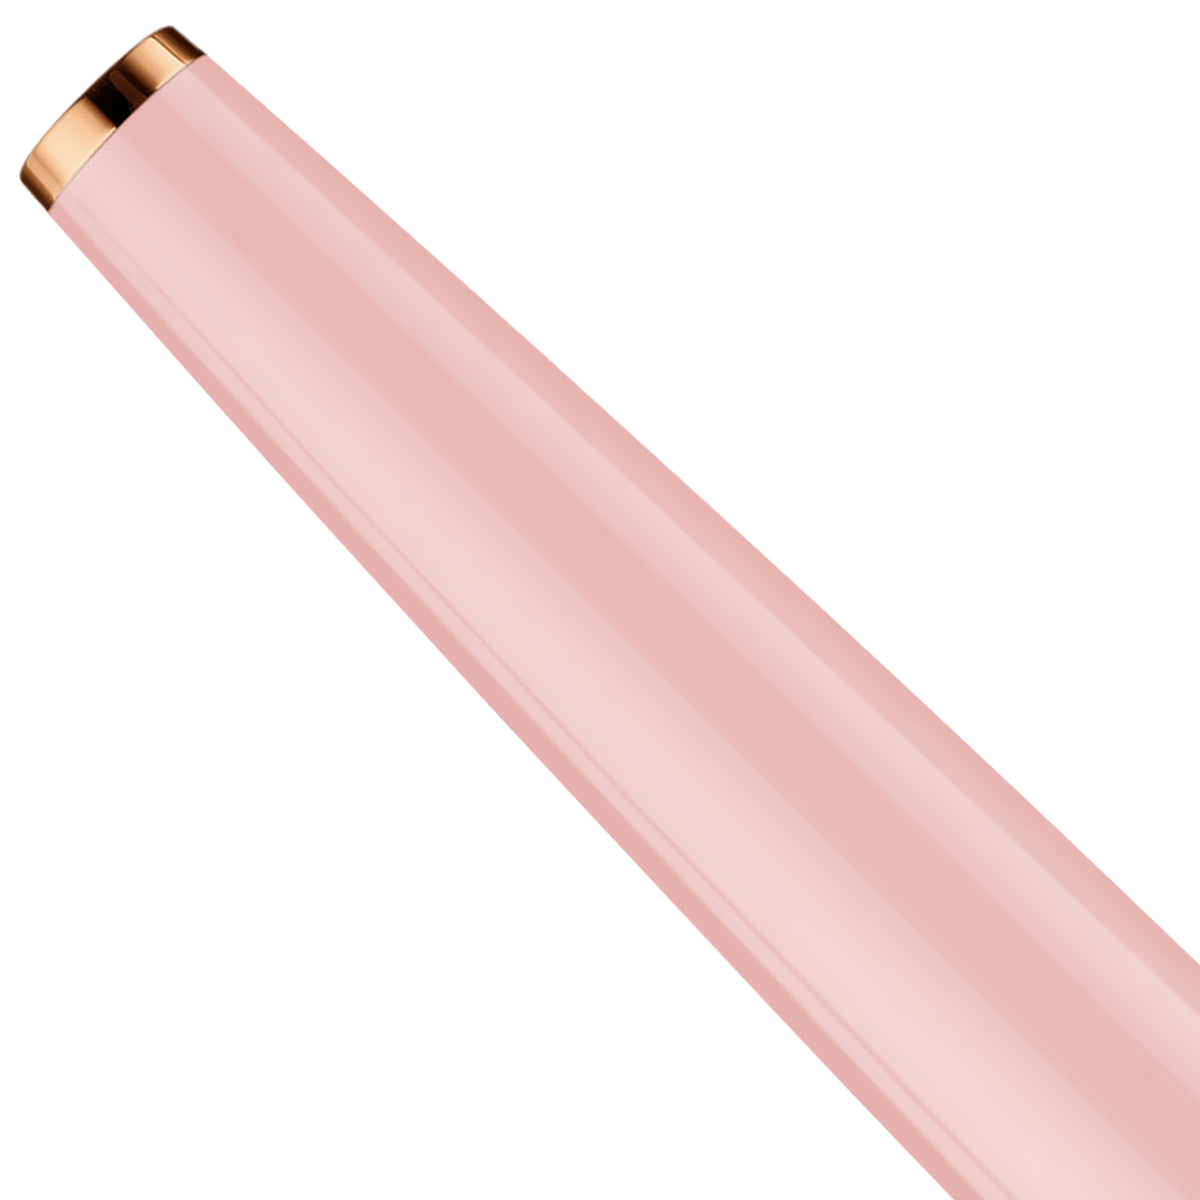 Füllfederhalter Otto Hutt Design06 - Pink Glanz, Beschlagteile rosé vergoldet / Stahlfeder